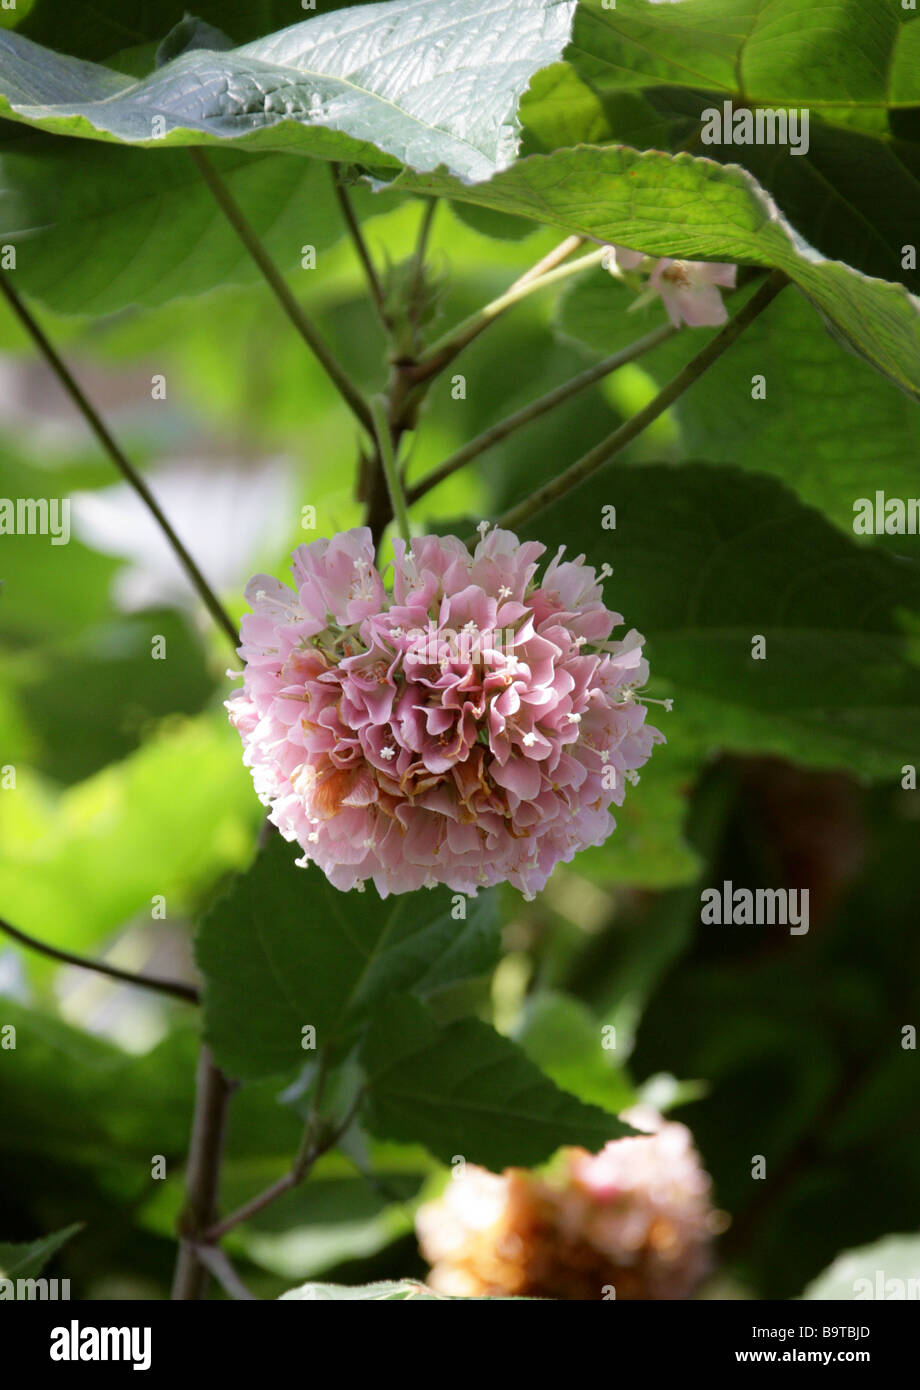 Boule rose, Dombeya cayeuxii, sous-famille des Malvacées Dombeyoideae, auparavant classé dans Sterculiaceae, Afrique Banque D'Images